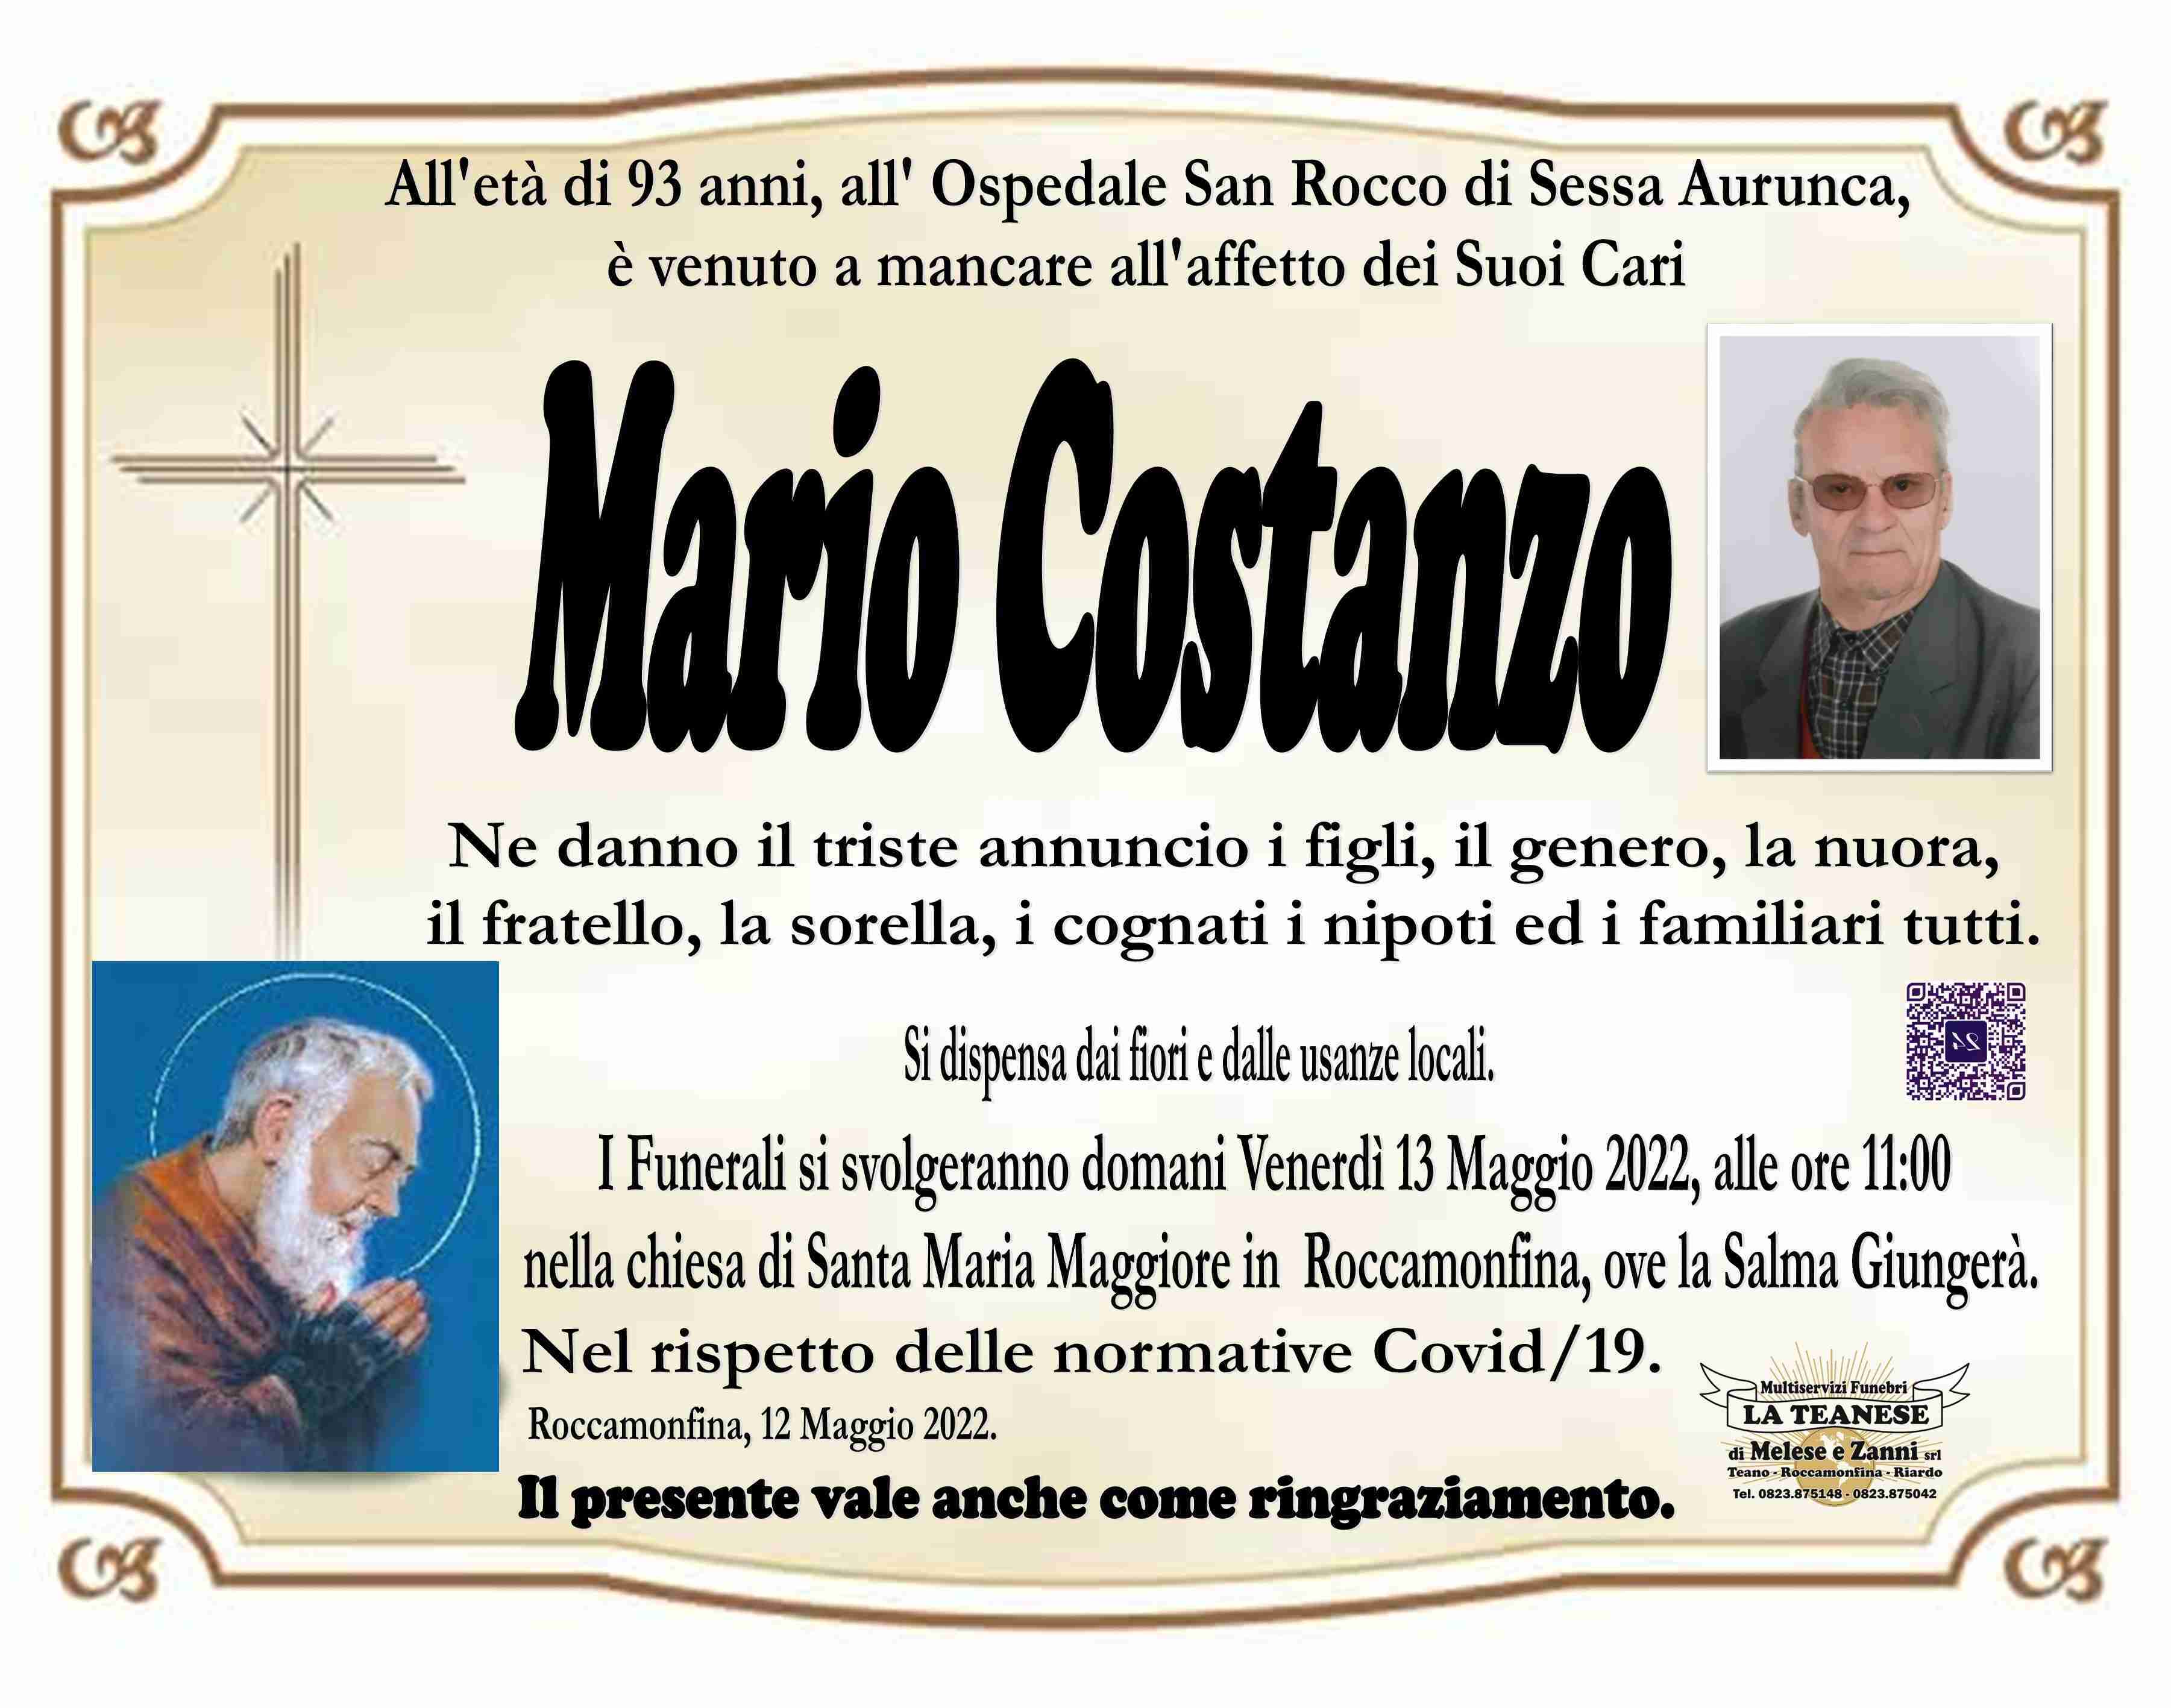 Mario Costanzo